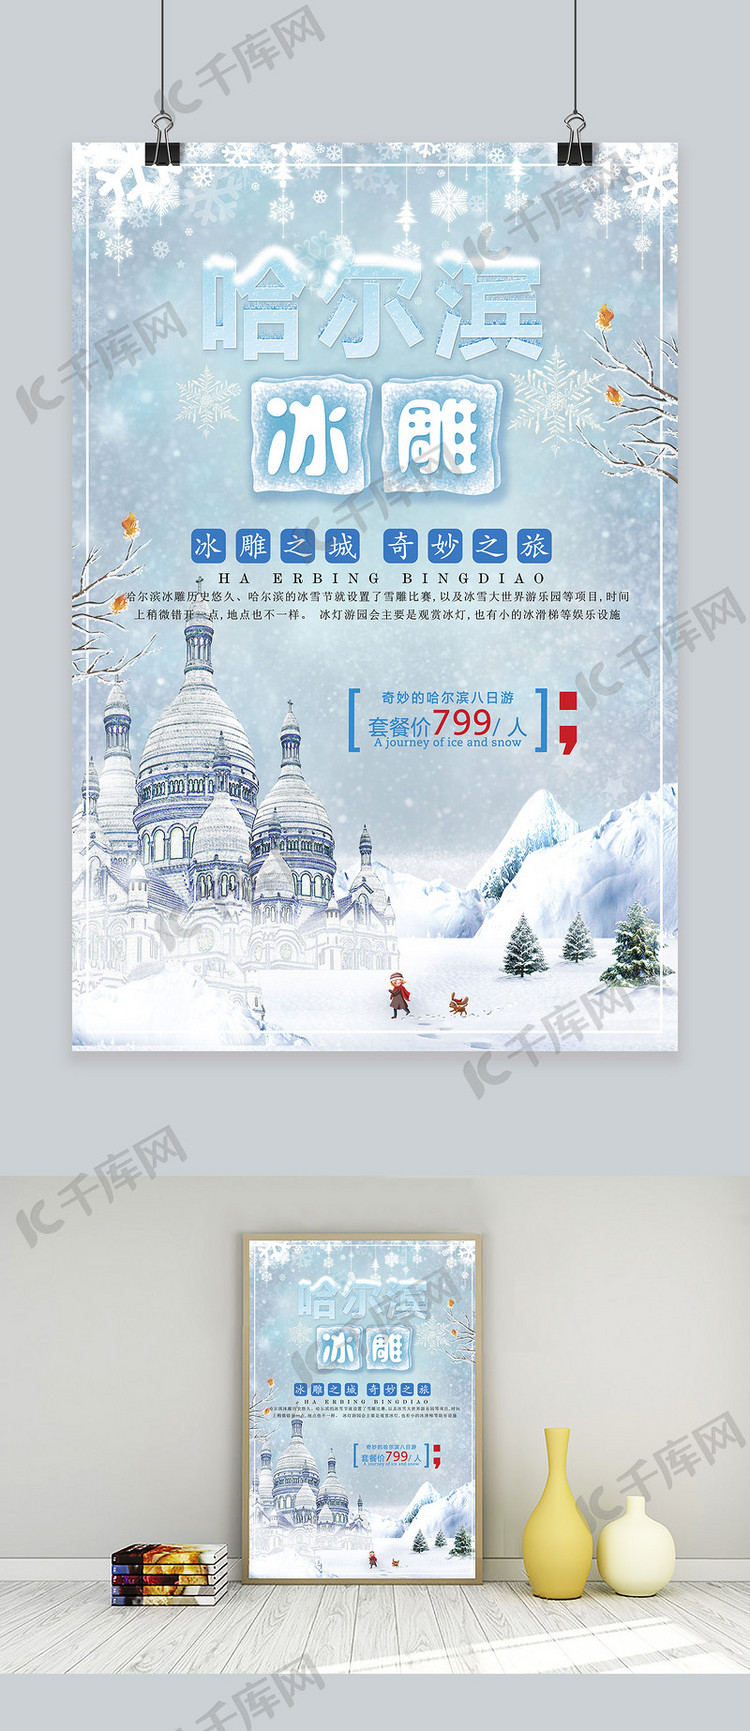 创意哈尔滨冰雕旅游宣传海报